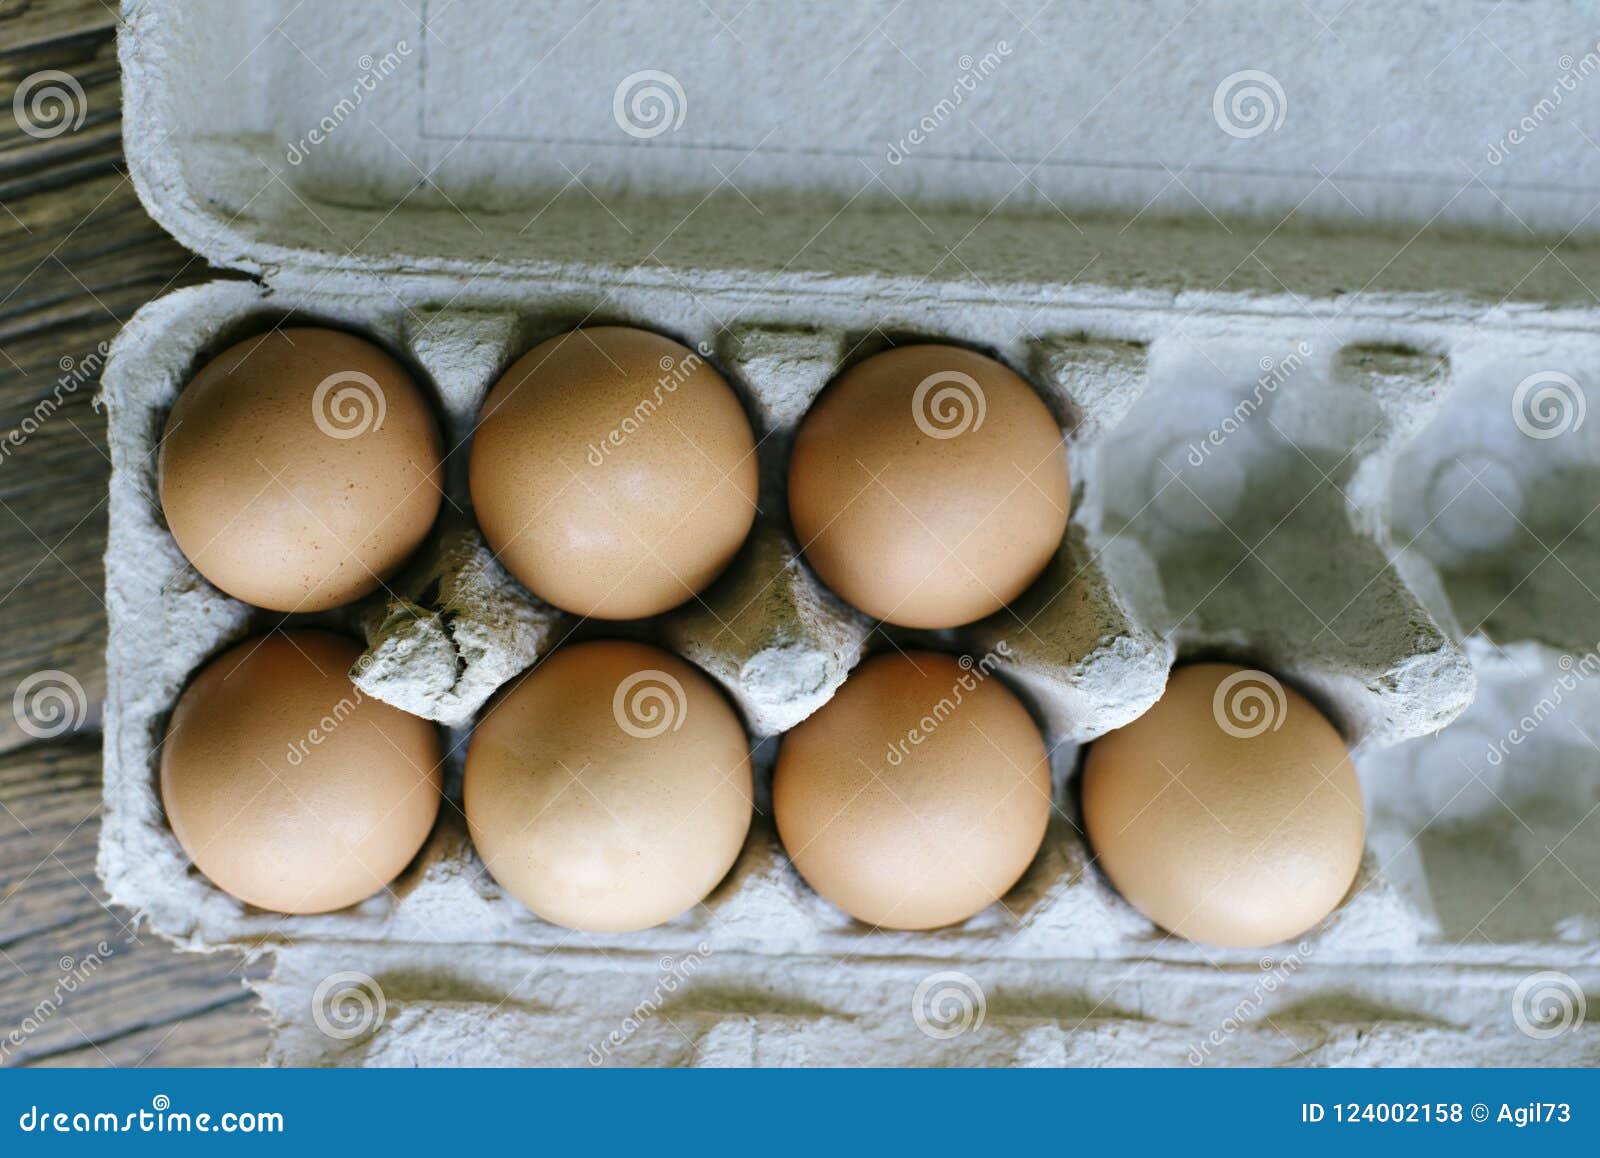 7 Uova Fresche in Un Cartone Dell'uovo Fotografia Stock - Immagine